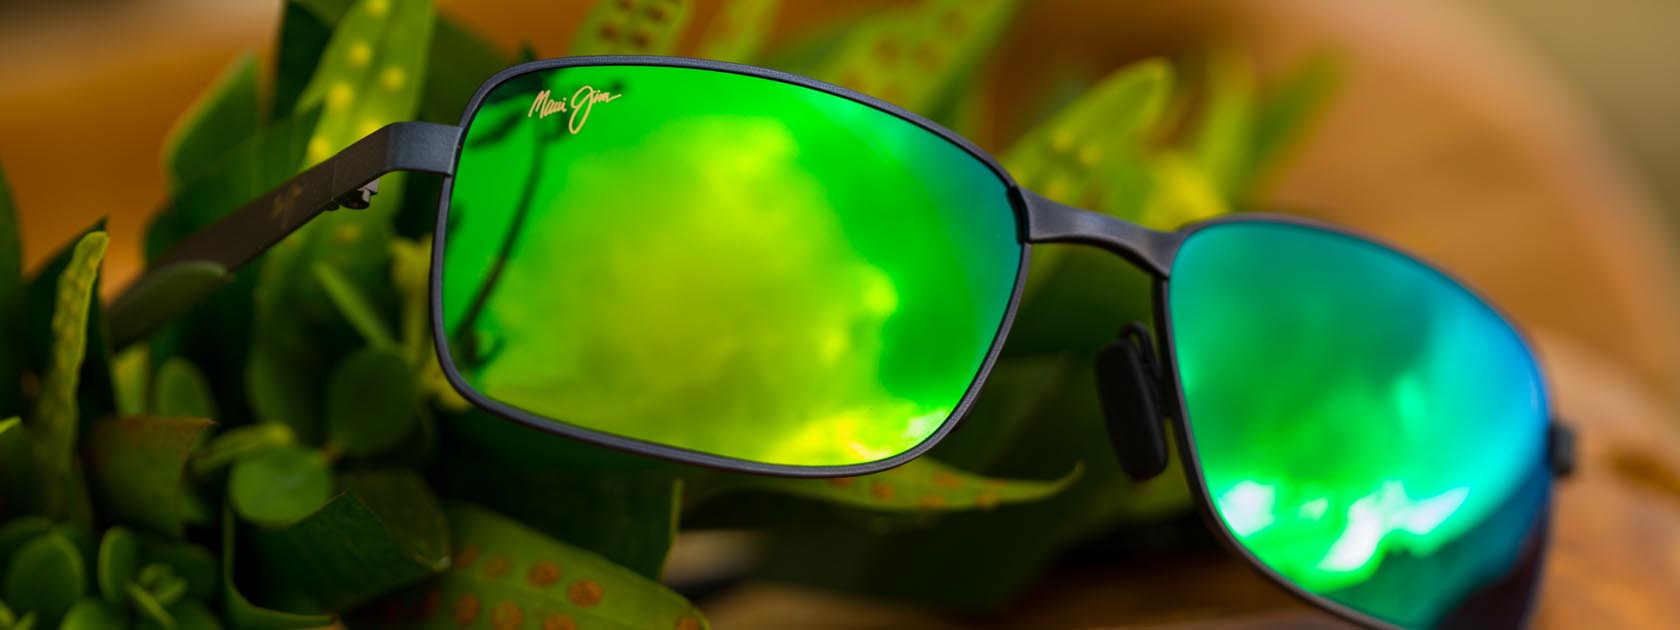 Sonnenbrille mit Metallfassung und spiegelnden grünen Gläsern vor grünen tropischen Blättern